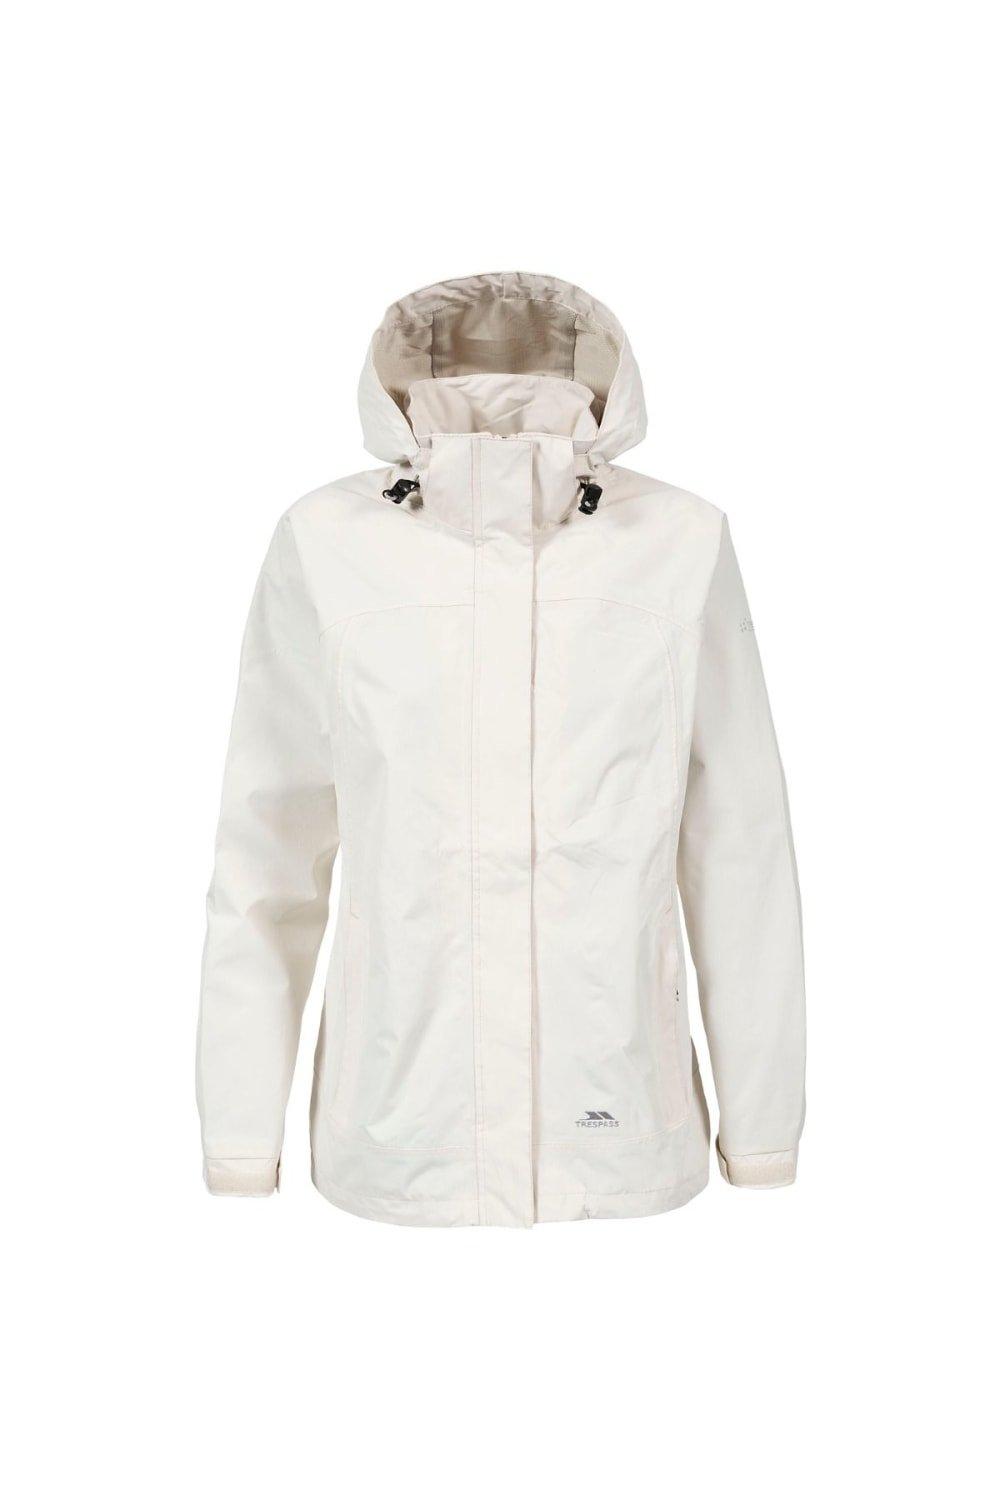 Jackets & Coats | Nasu II Waterproof Shell Jacket | Trespass